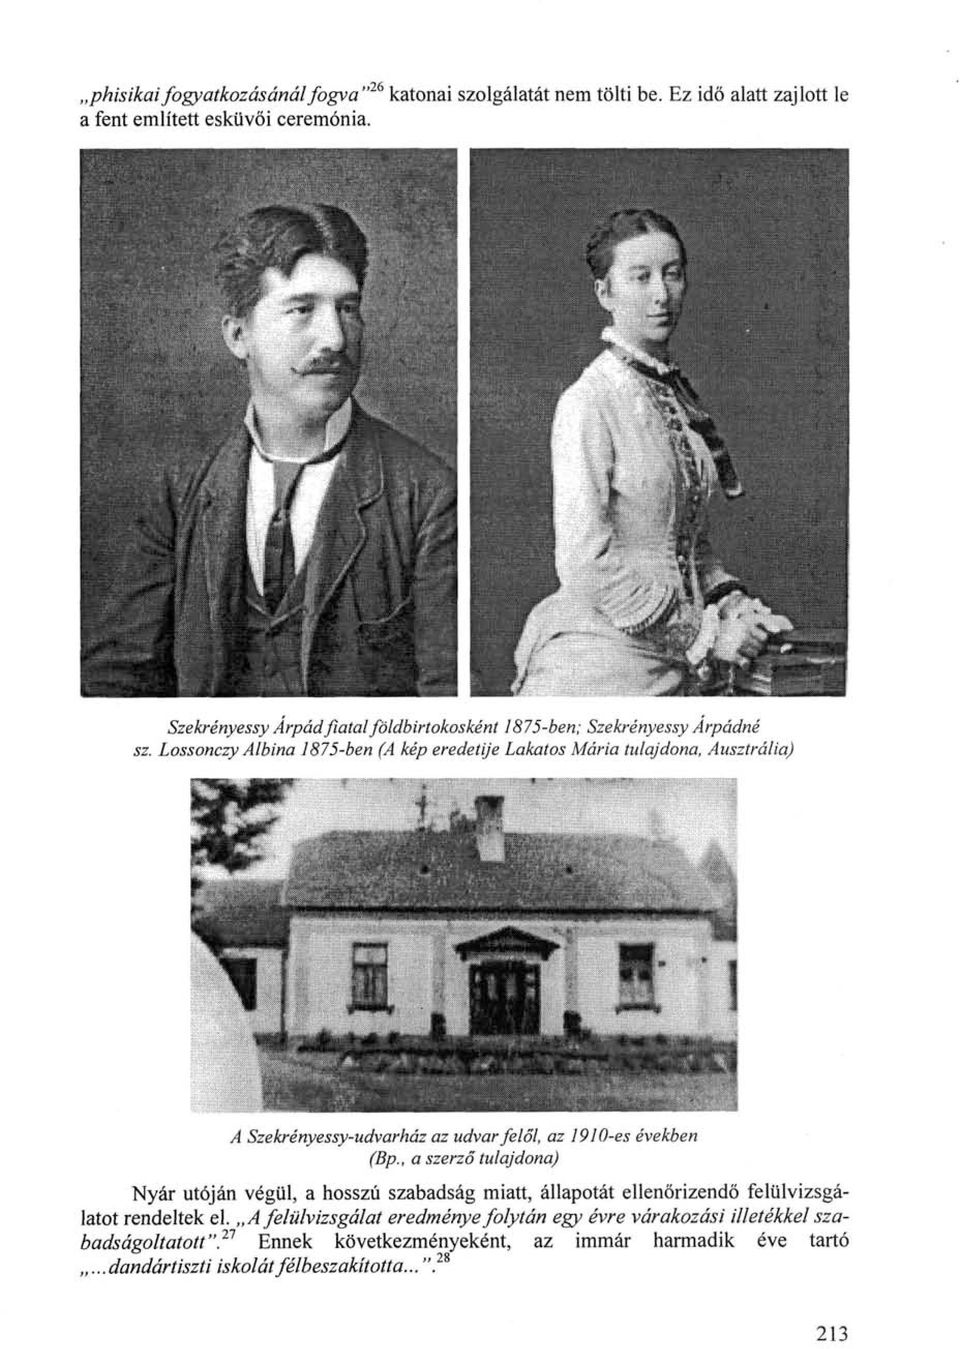 Lossonczy Albina 1875-ben (A kép eredetije Lakatos Mária tulajdona, Ausztrália) A Szekrényessy-udvarház az udvar felől, az 1910-es években (Bp.